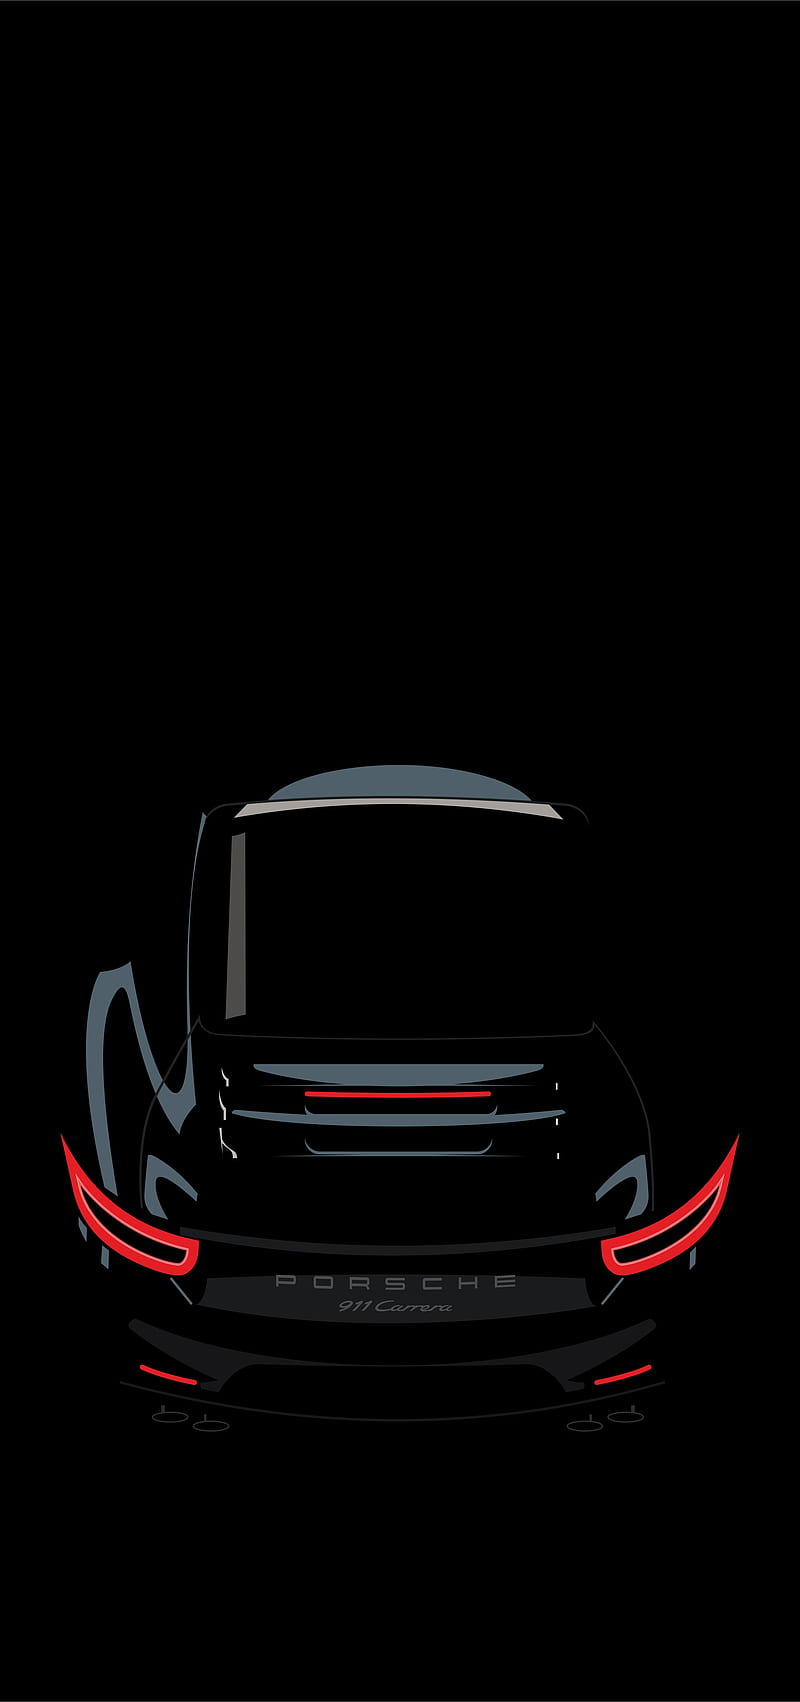 Black Porsche, bonito, beauty, car, car beauty, carros, sport car, super car, HD phone wallpaper